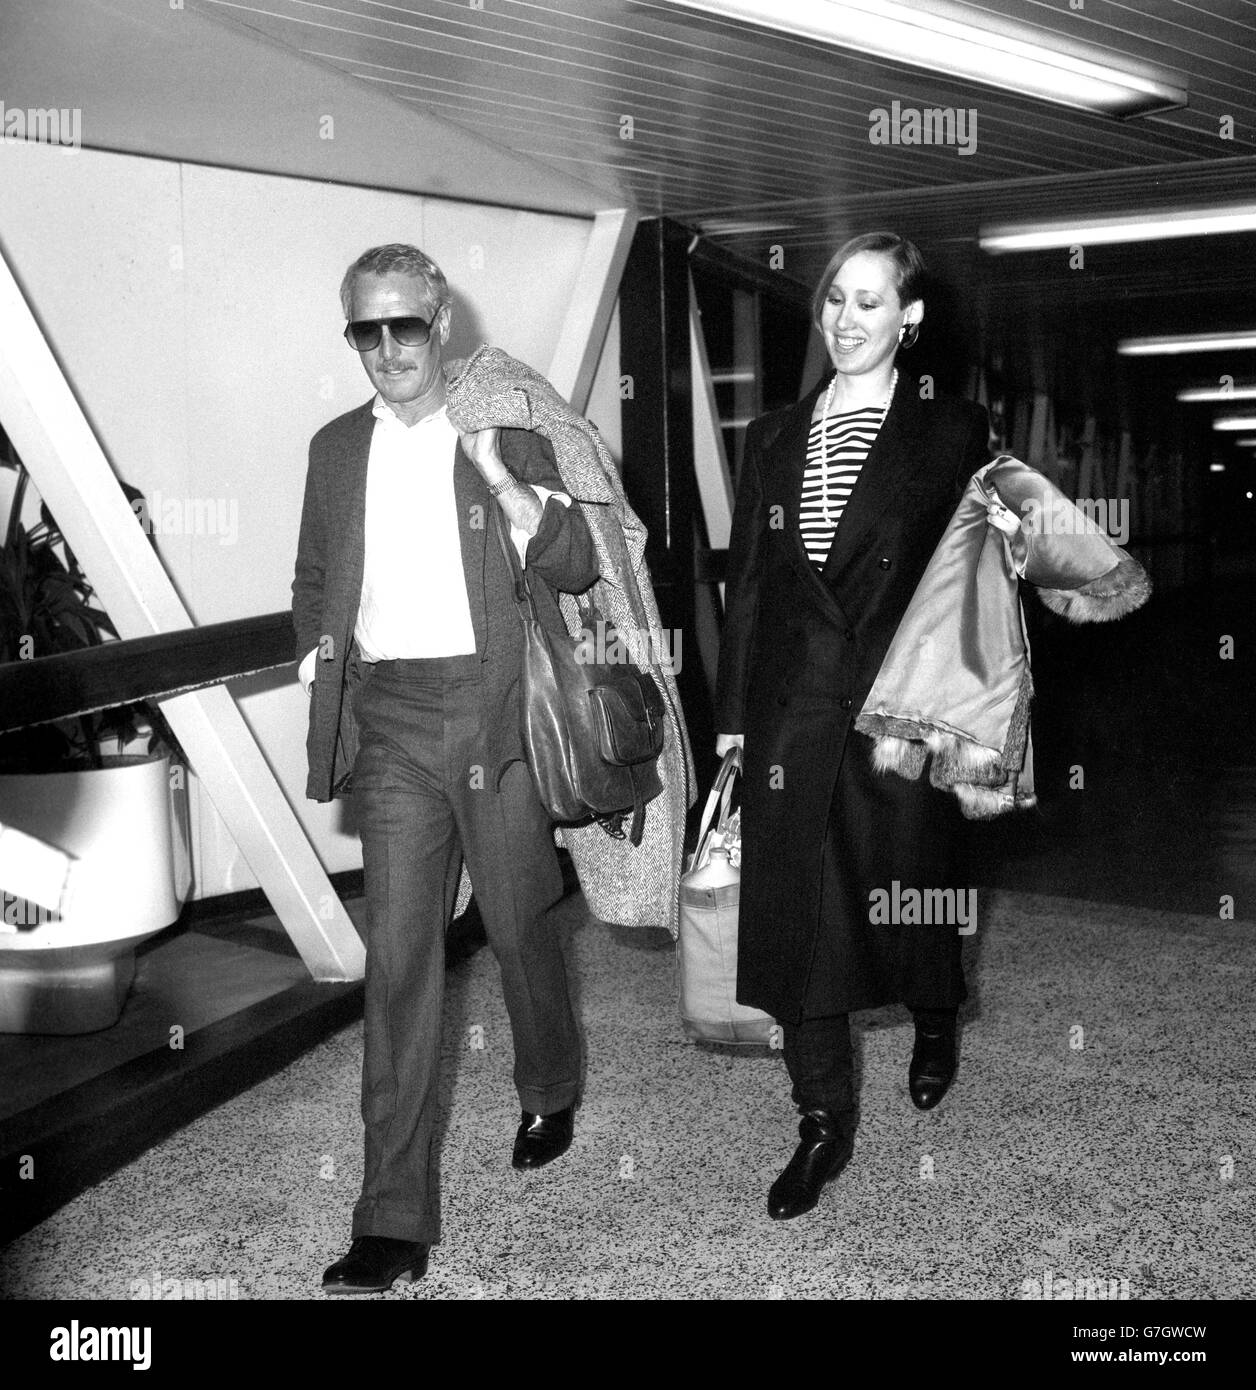 El actor estadounidense Paul Newman llega al aeropuerto de Heathrow después de viajar desde Nueva York por Concorde. Foto de stock